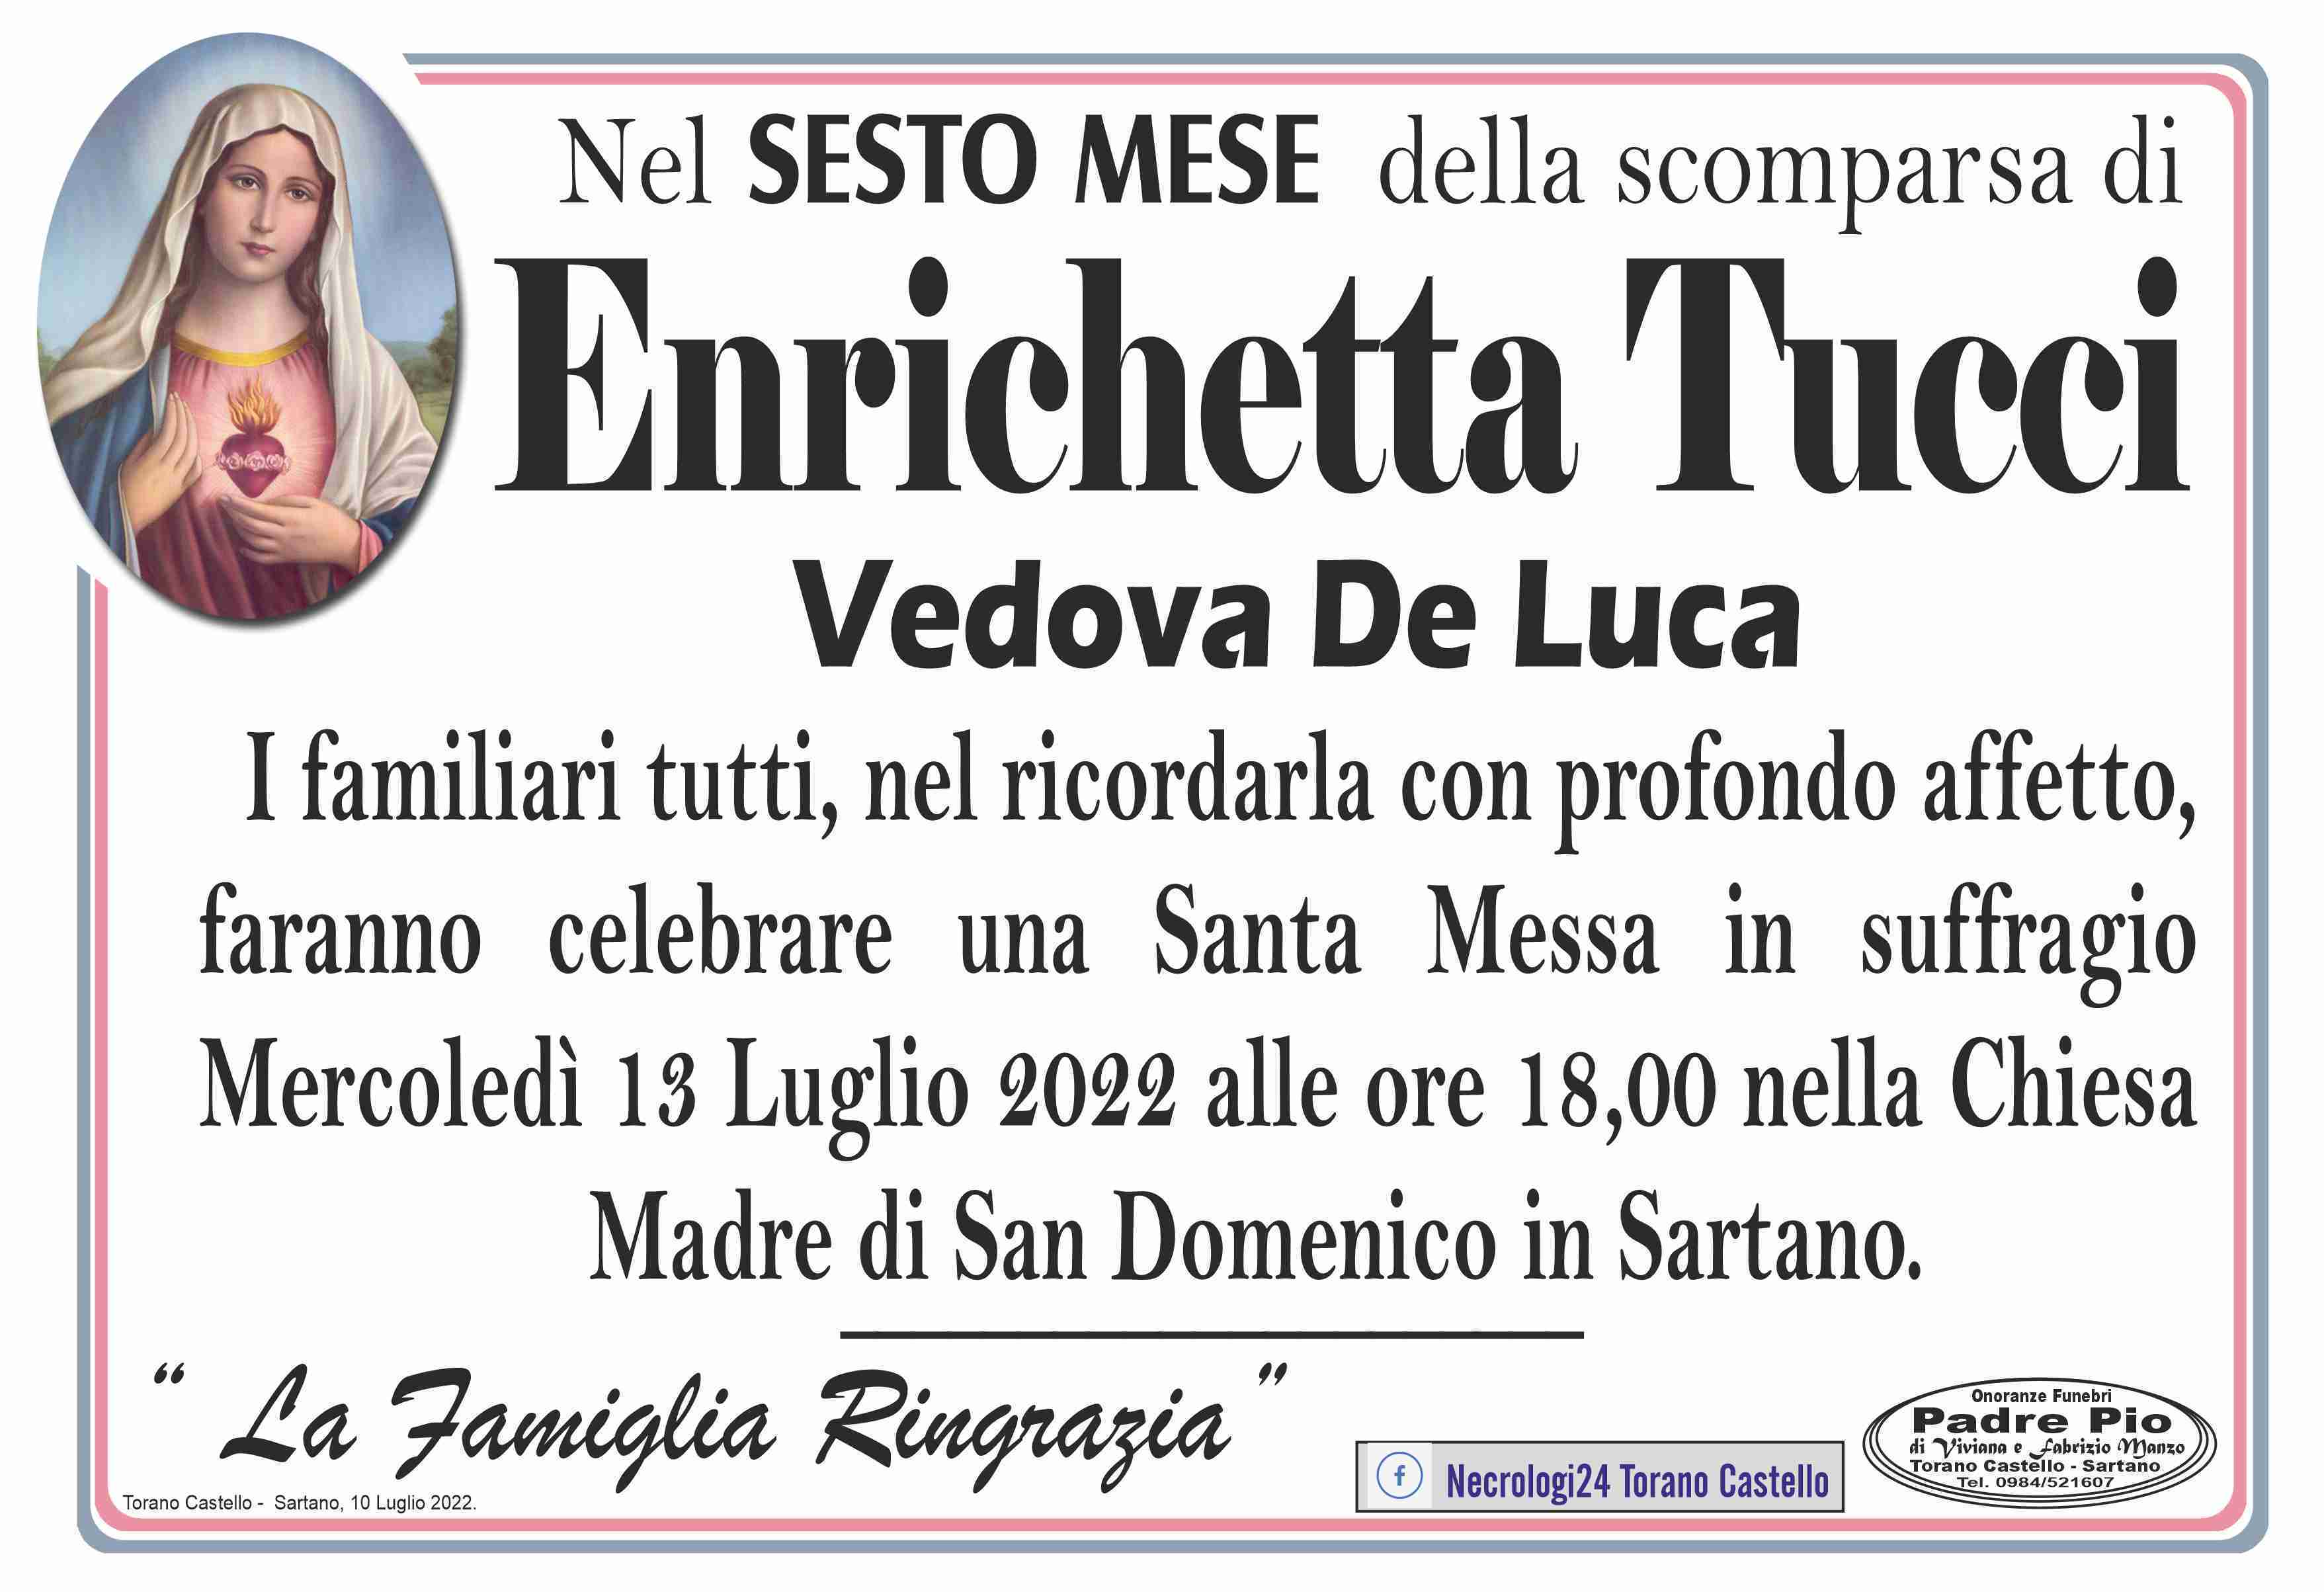 Enrichetta Tucci